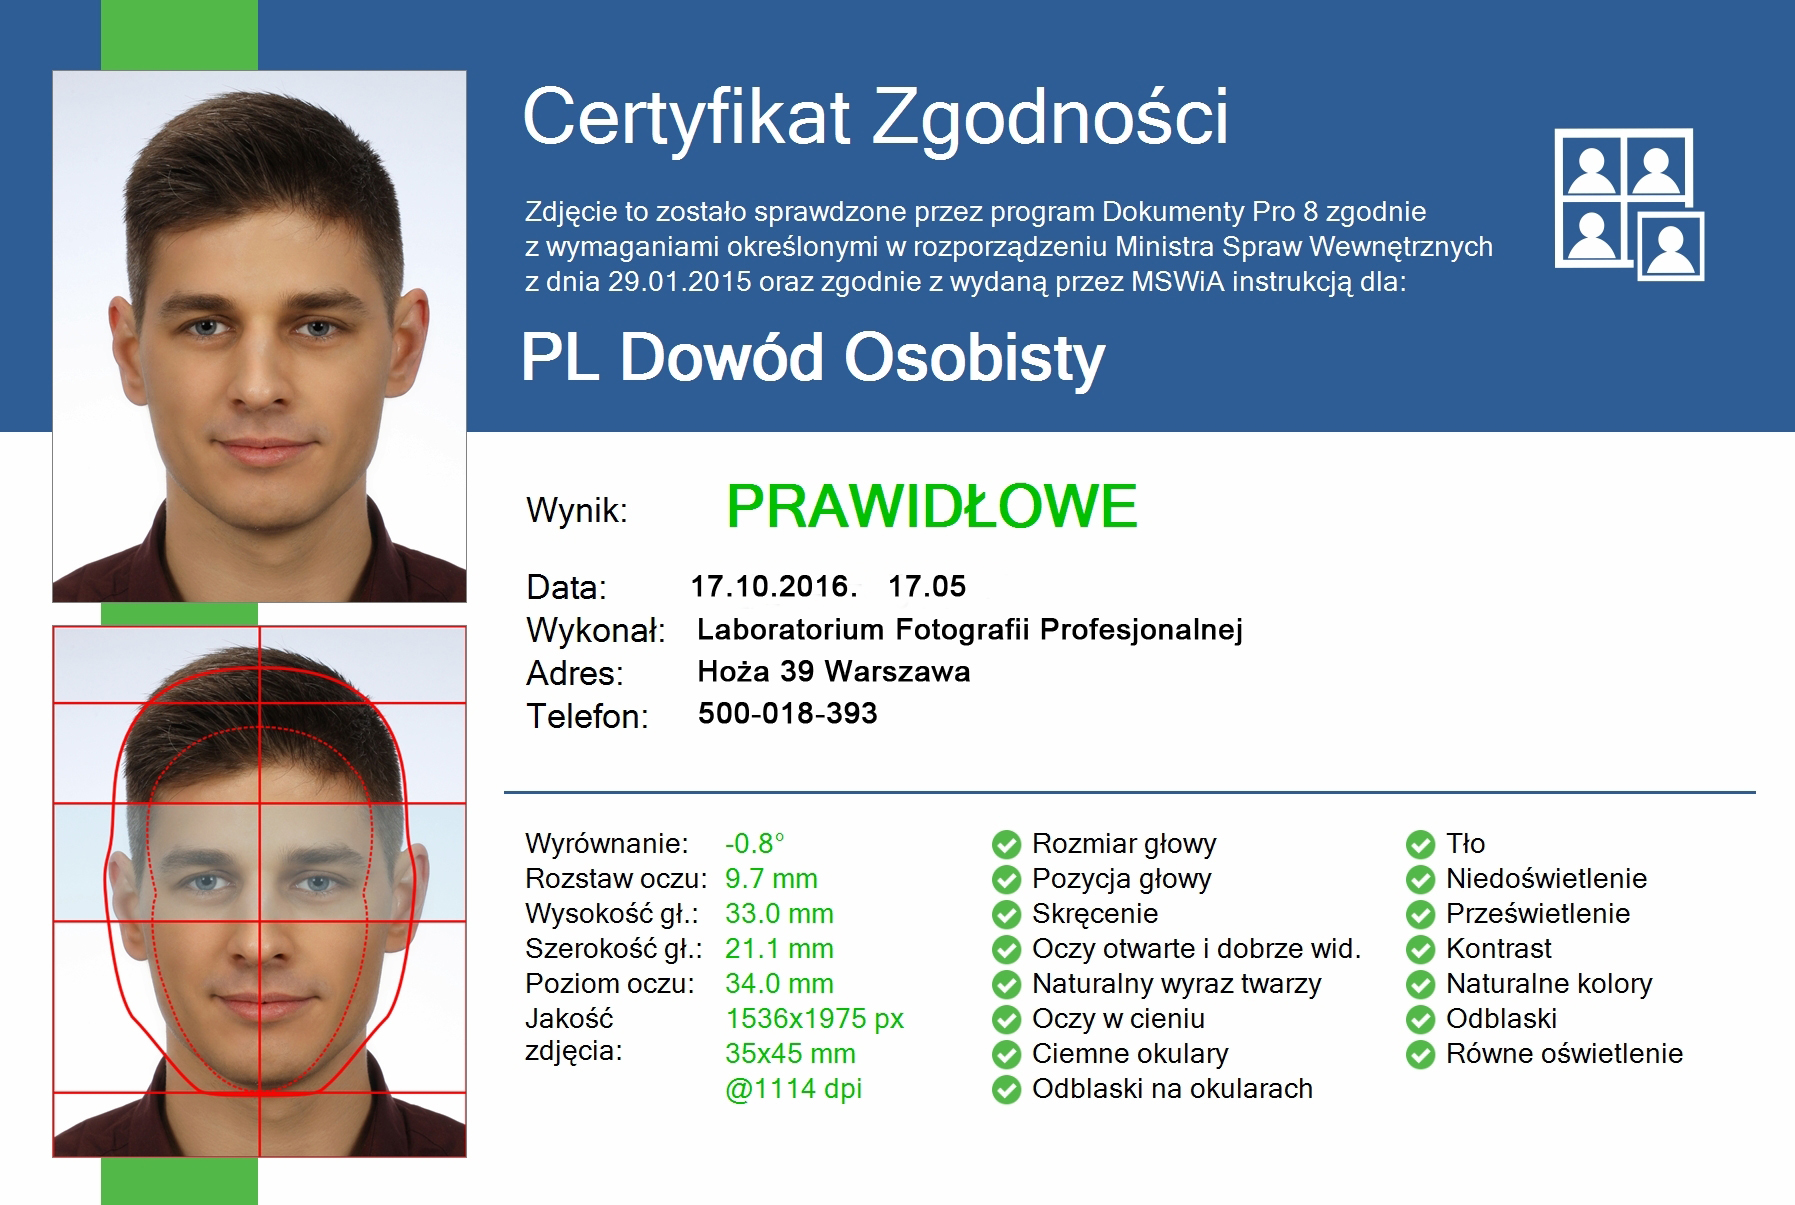 //lpfoto.pl/wp-content/uploads/2019/02/8E0Q5453_pp-PL-Dowód-Osobisty-5.98x4.02-_Certyfikat-zgodności-35x45.jpg